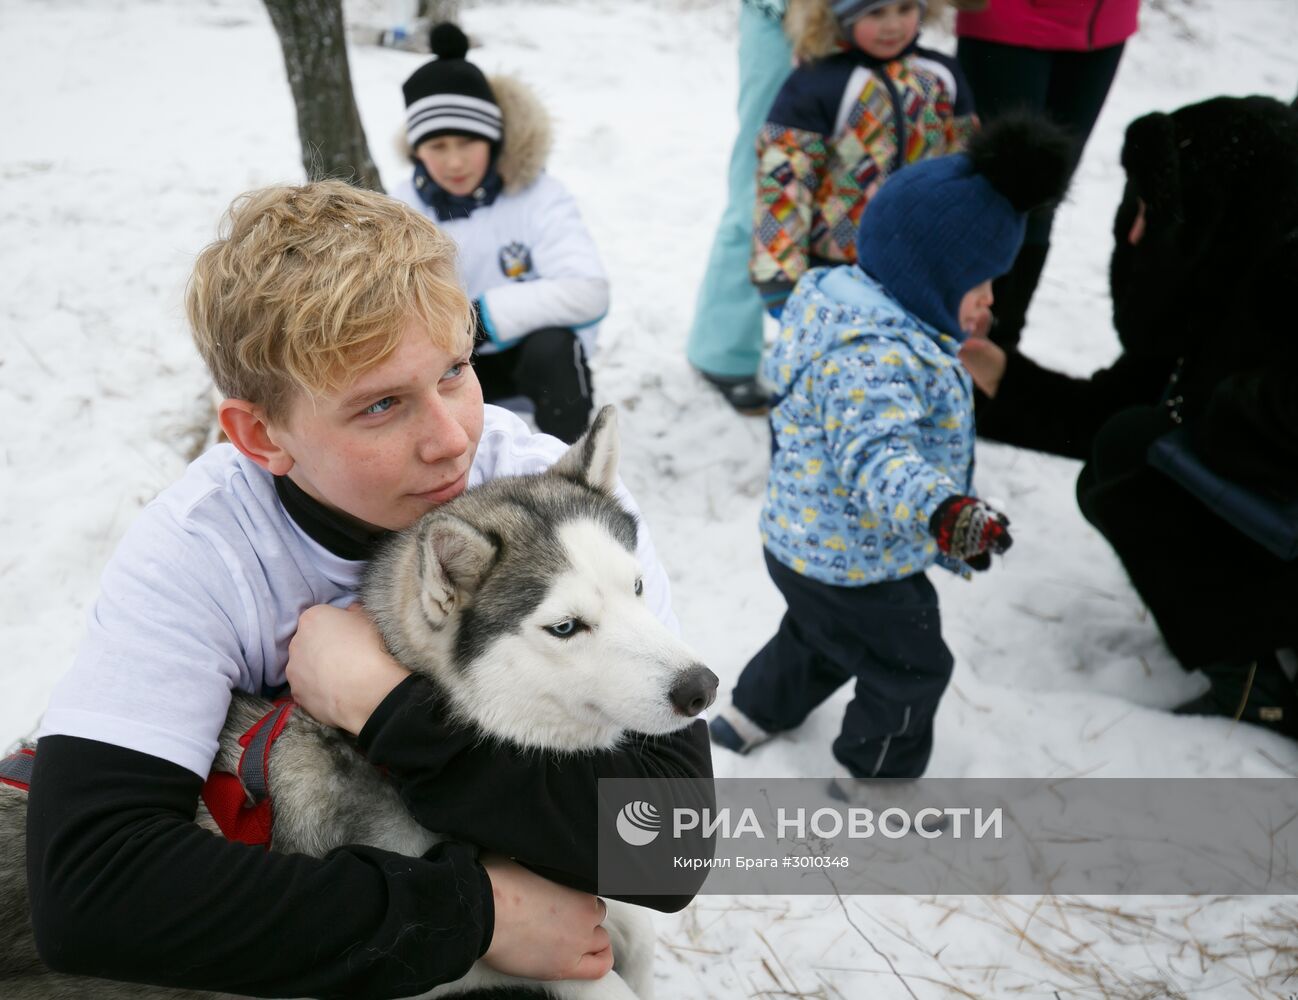 Всероссийский день снега в Волгограде